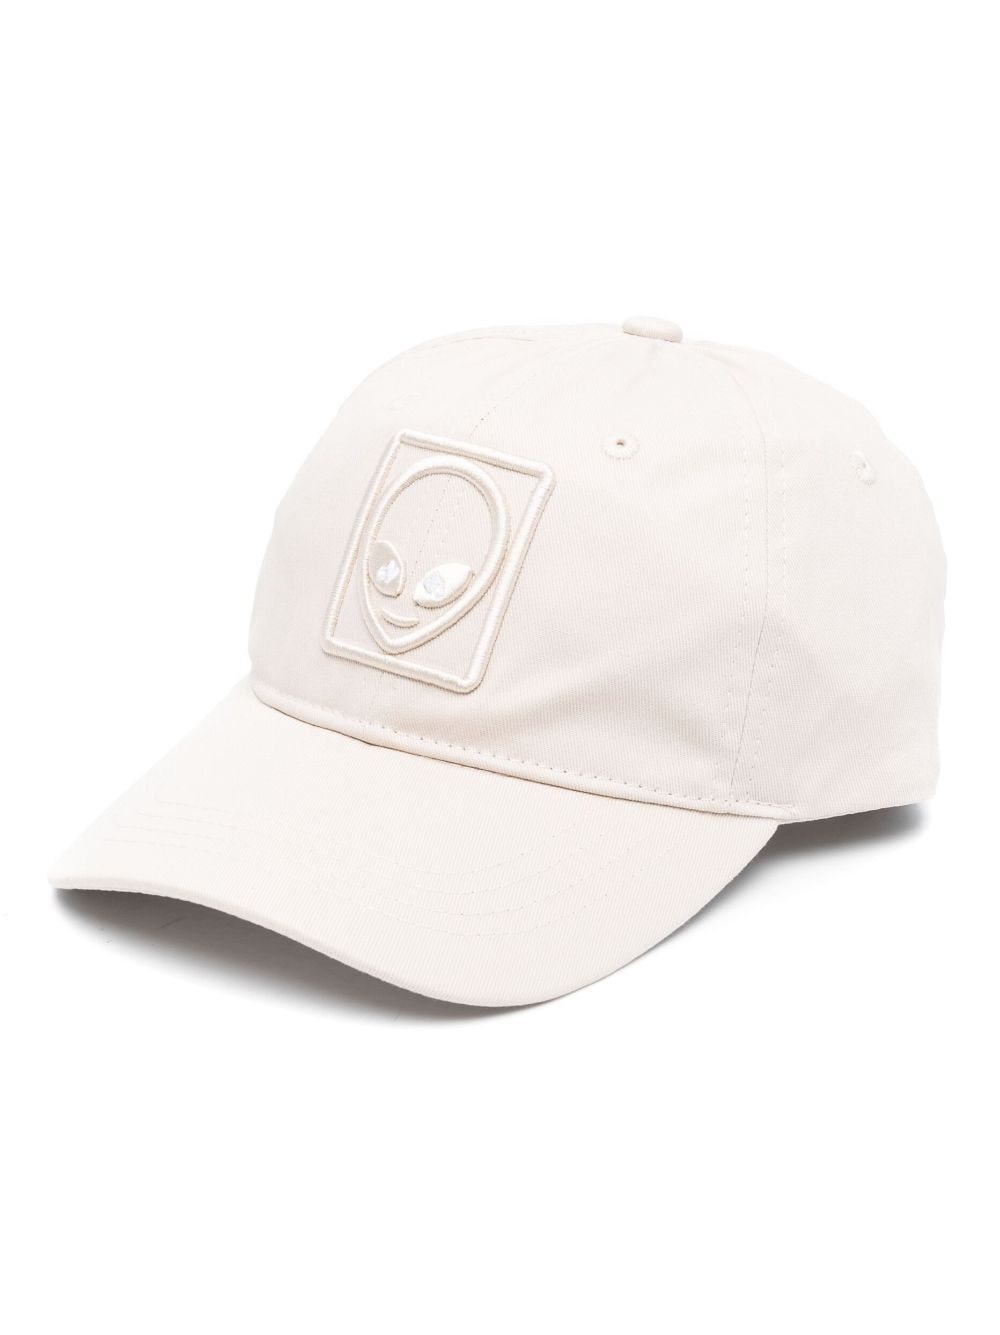 Wirdo embroidered cotton baseball cap - 1